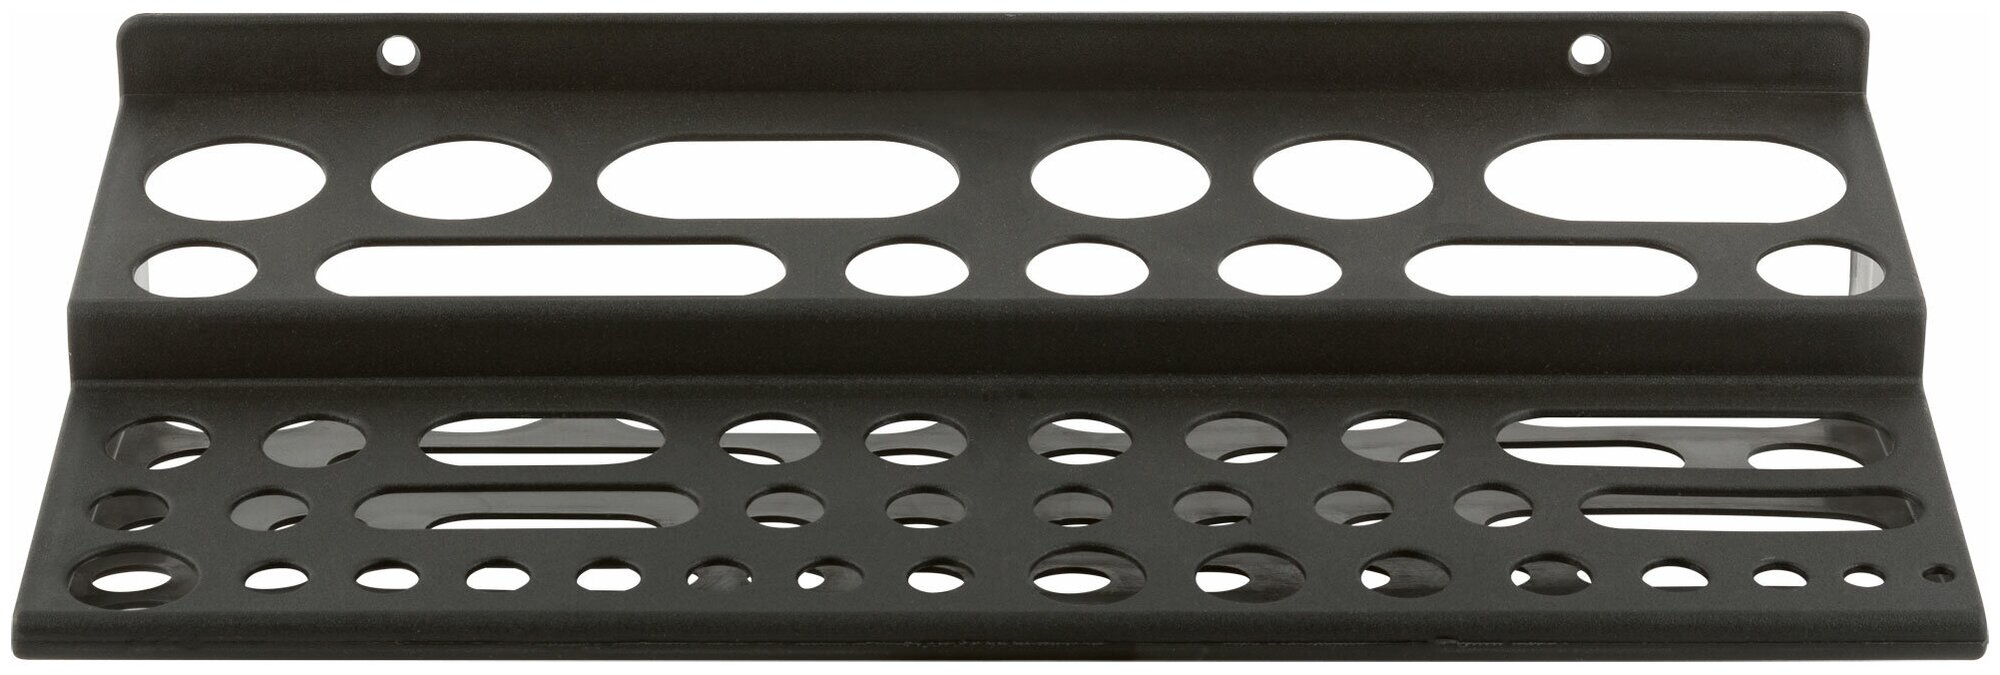 Курс Полка для инструмента пластиковая "мини" черная 48 отверстий 300х150 мм курс 65703